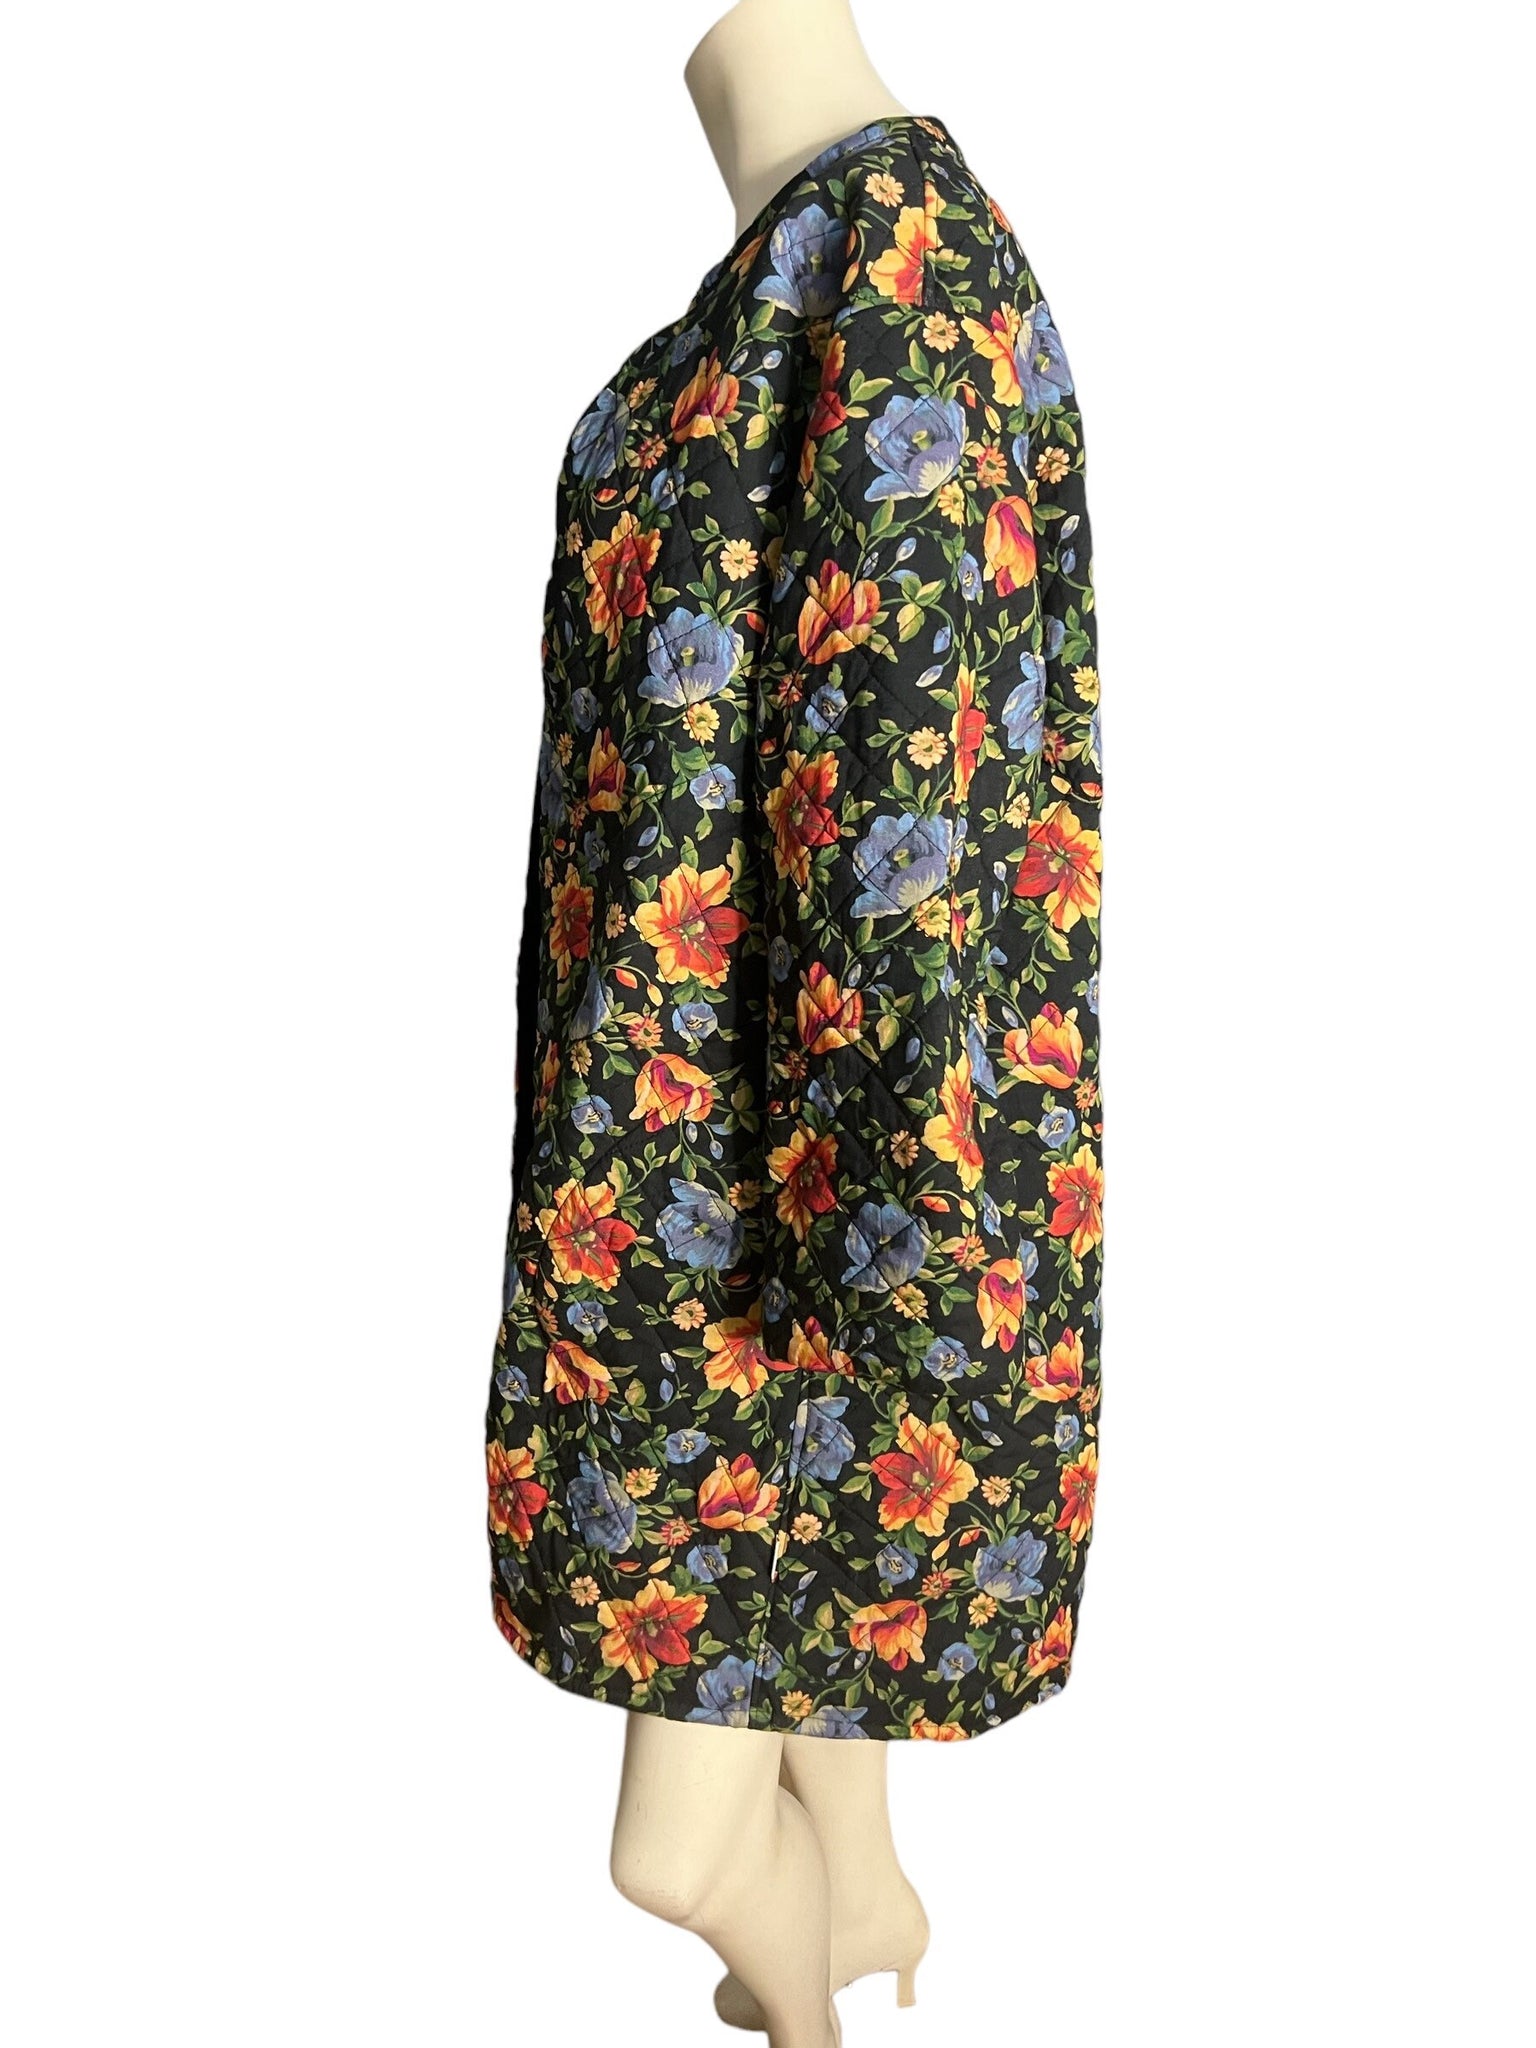 Vintage 80's black floral quilted jacket L XL